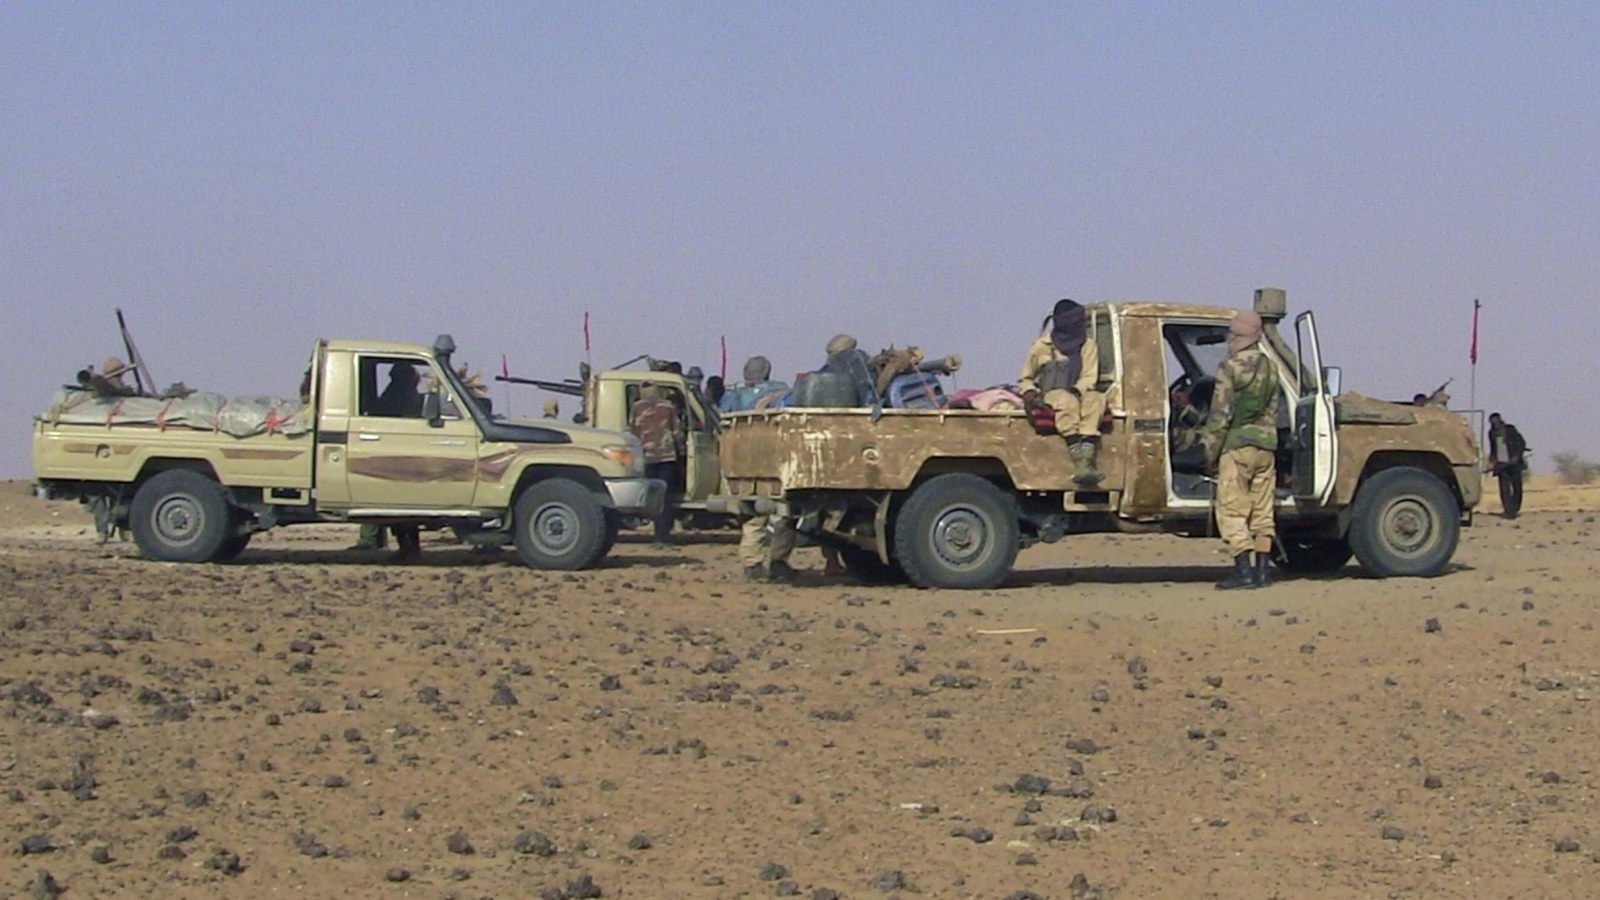 الاشتباكات تحتد وتخمد في شمال مالي ومسار المفاوضات يتواصل بحثا عن السلم والمصالحة(رويترز-أرشيف)